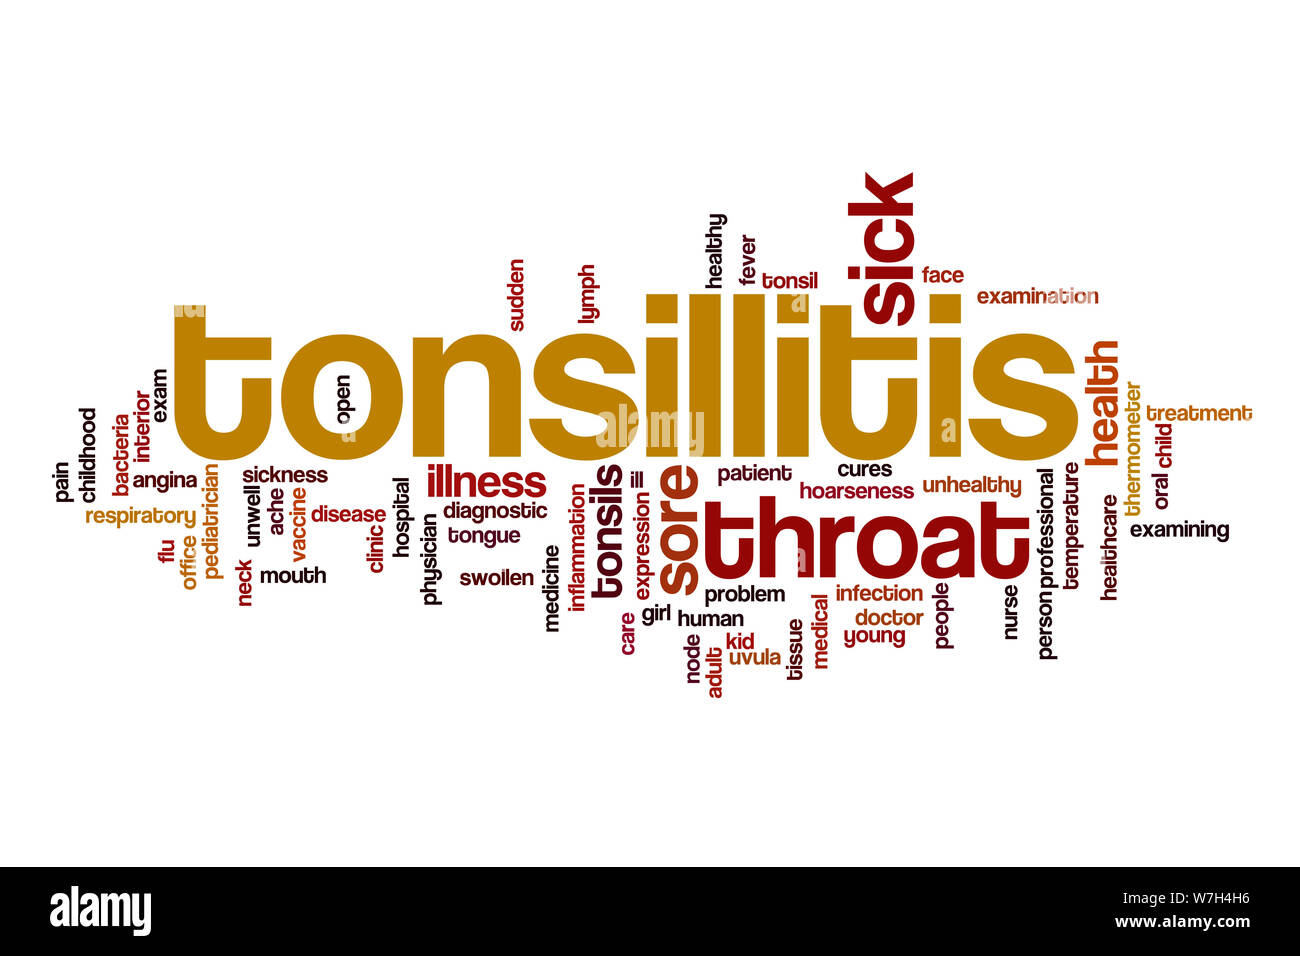 Tonsillitis word cloud Stock Photo